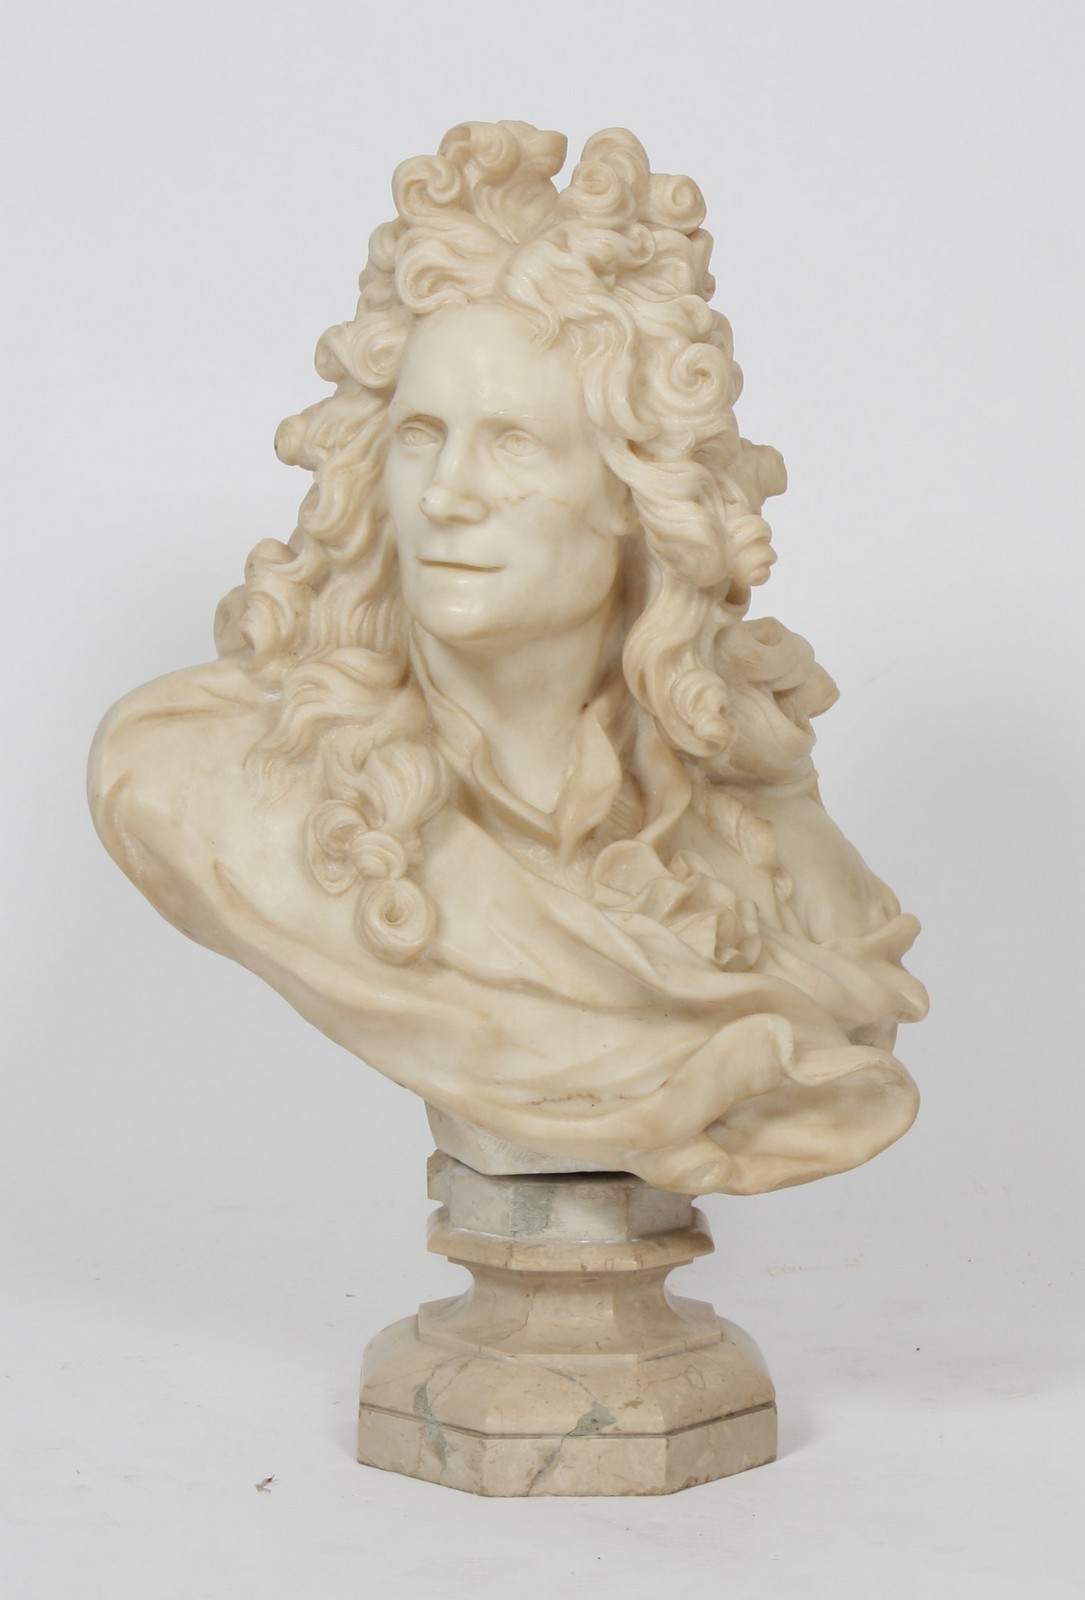 BUSTE D'HOMME DE QUALITE
En marbre, représentant un personnage du XVIIème siècle, reposant sur une